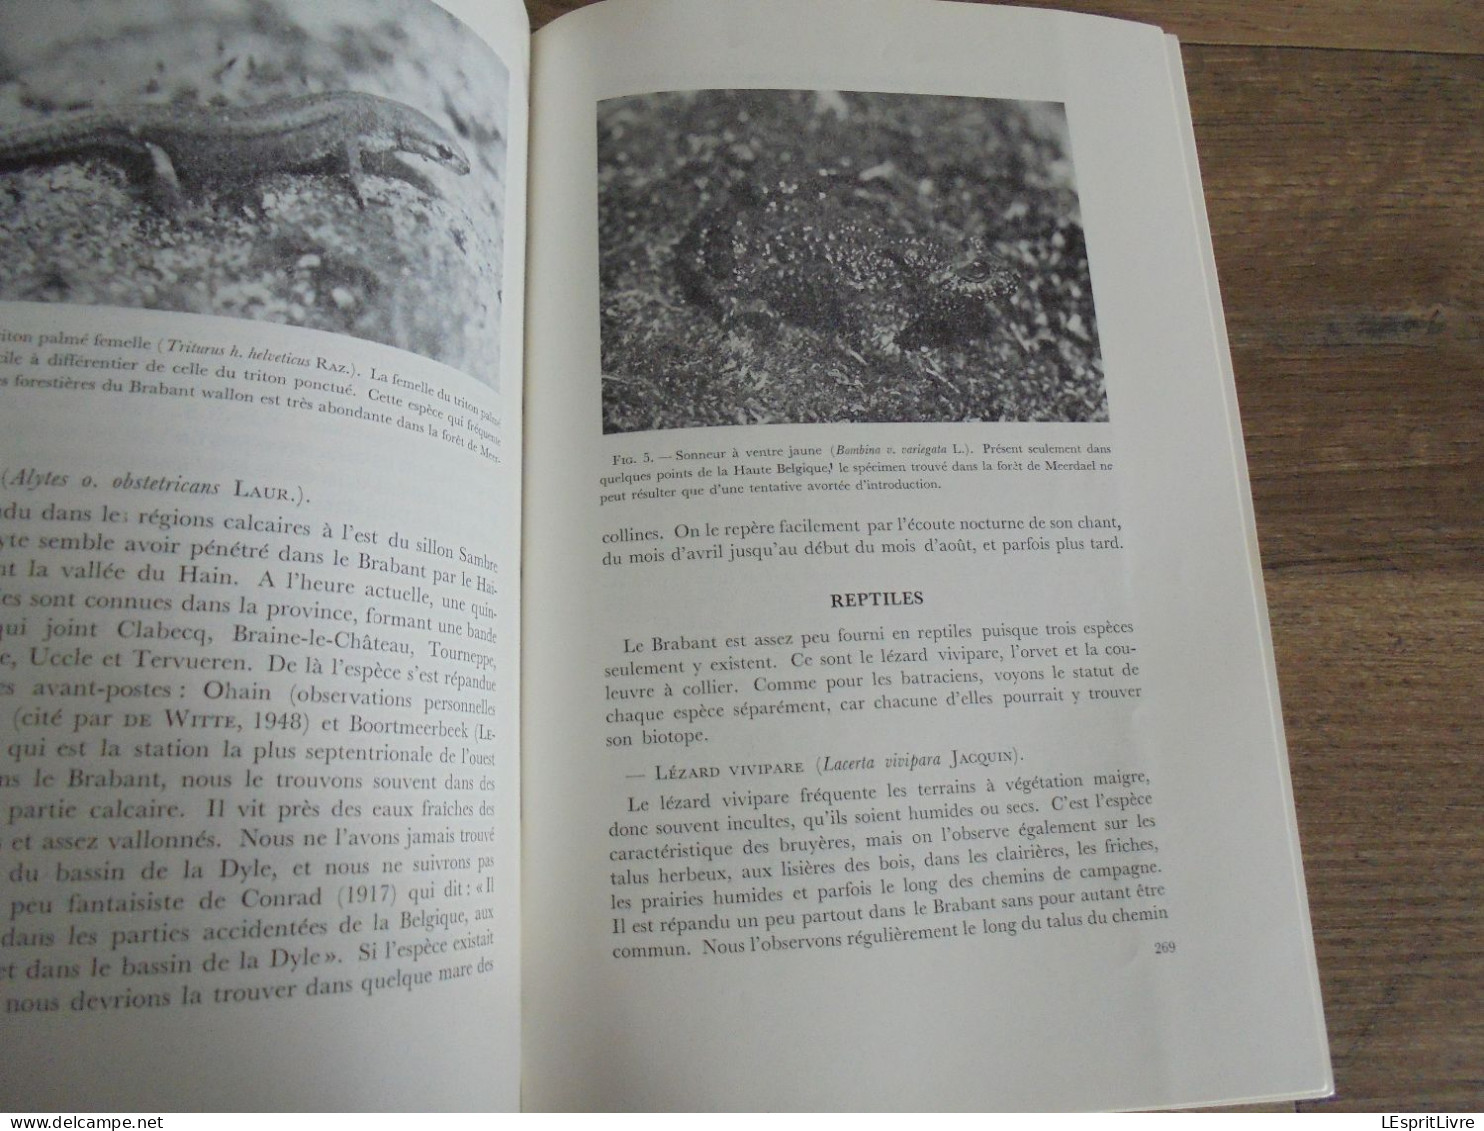 LES NATURALISTES BELGES N° 5 Année 1972 Régionalisme Bassin de la Dyle Wavre Louvain Papillon Botanique Flore